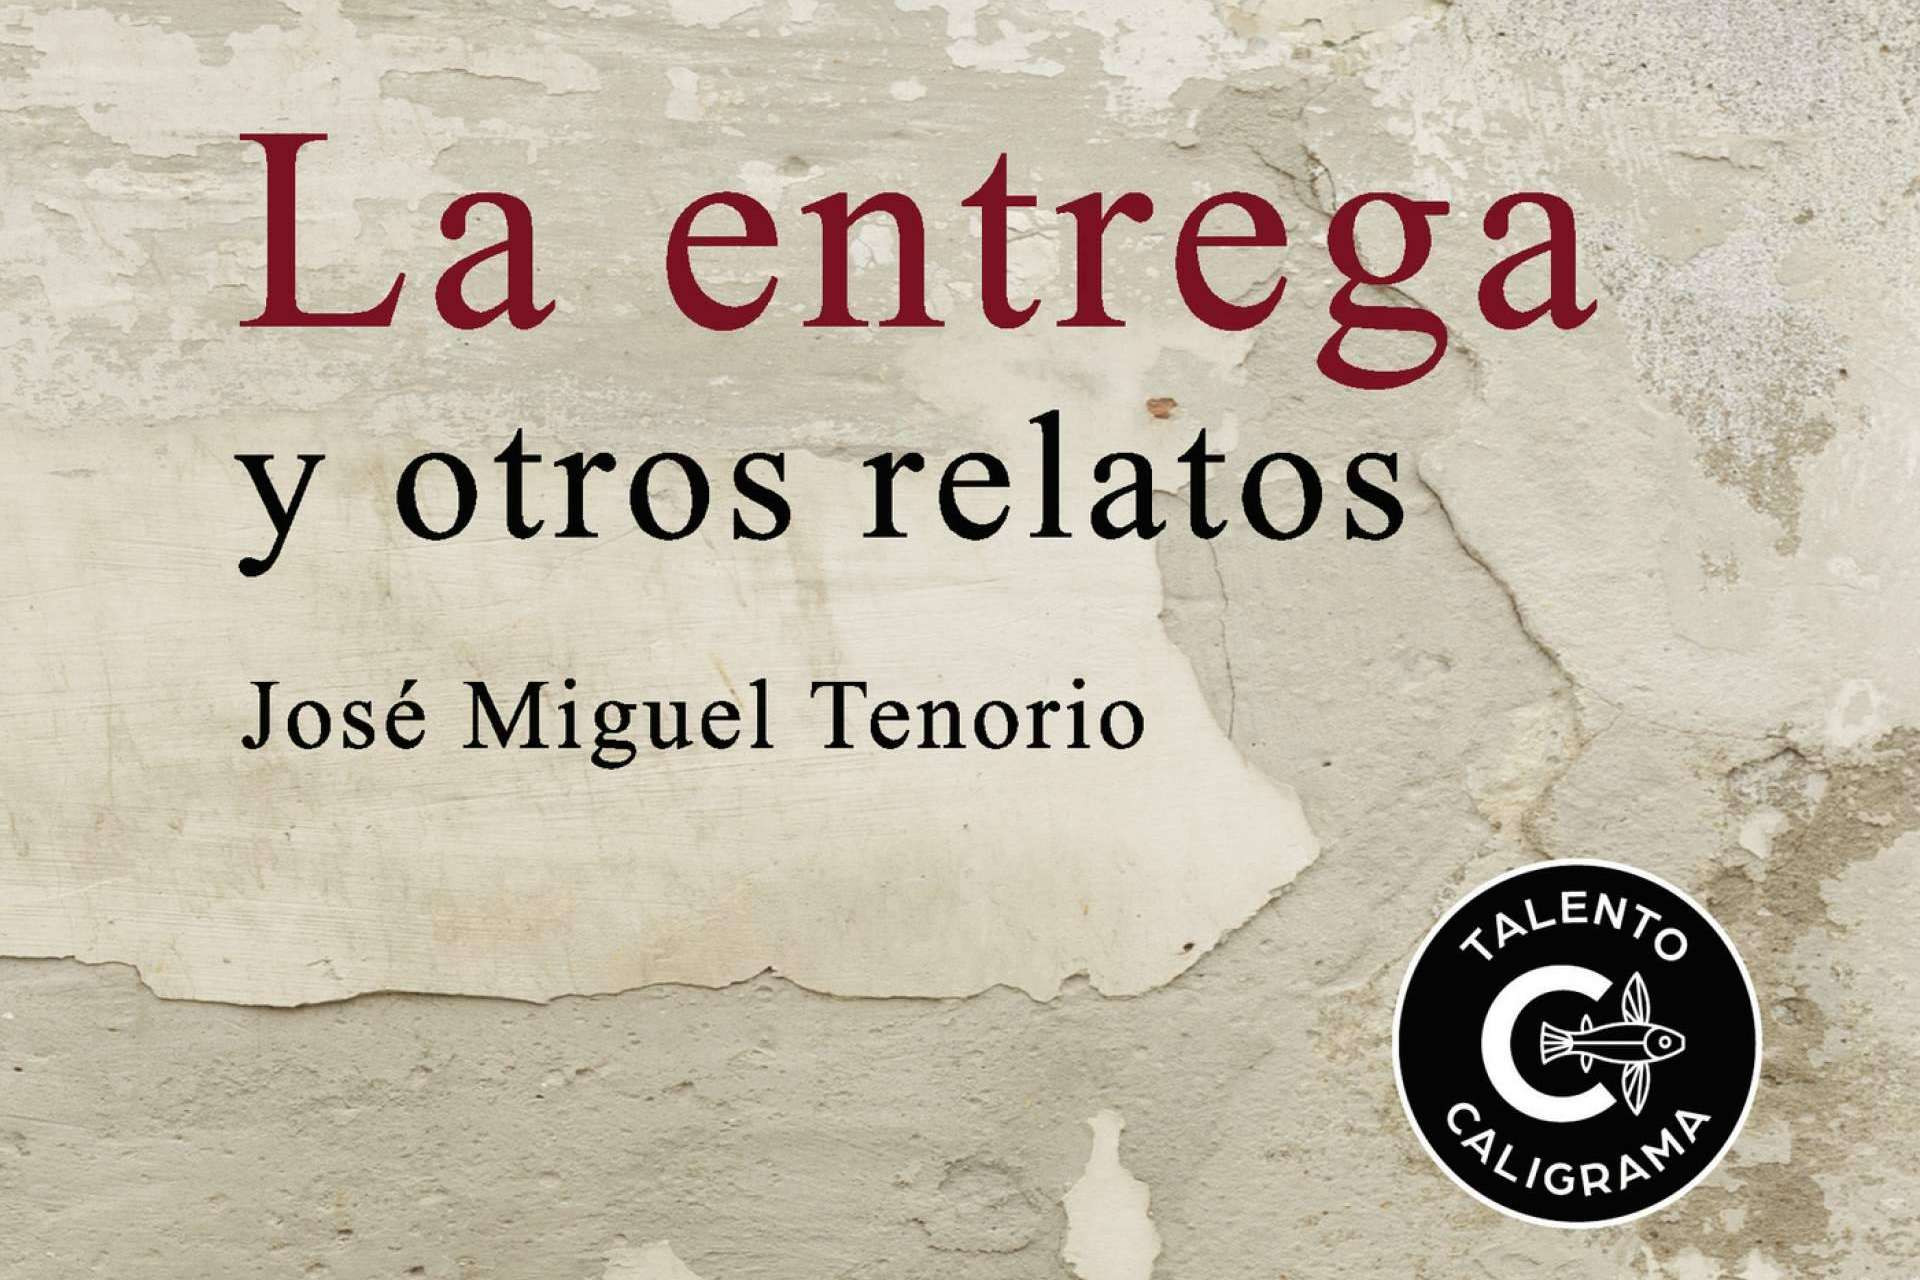  Editorial Caligrama publica 'La entrega y otros relatos', de José Miguel Tenorio 